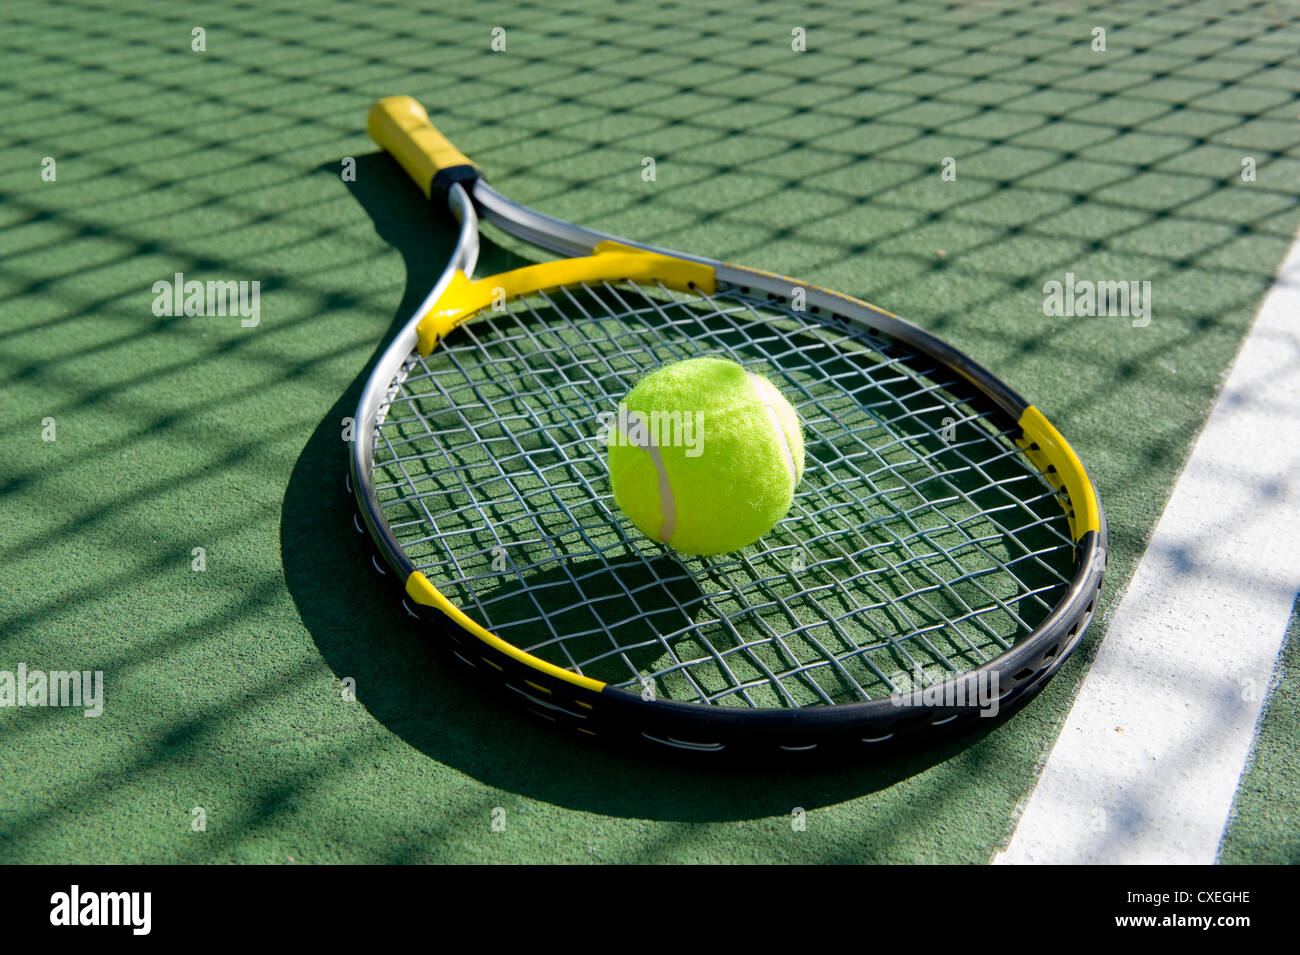 Una pelota de tenis y una raqueta de tenis recién pintada Foto de stock